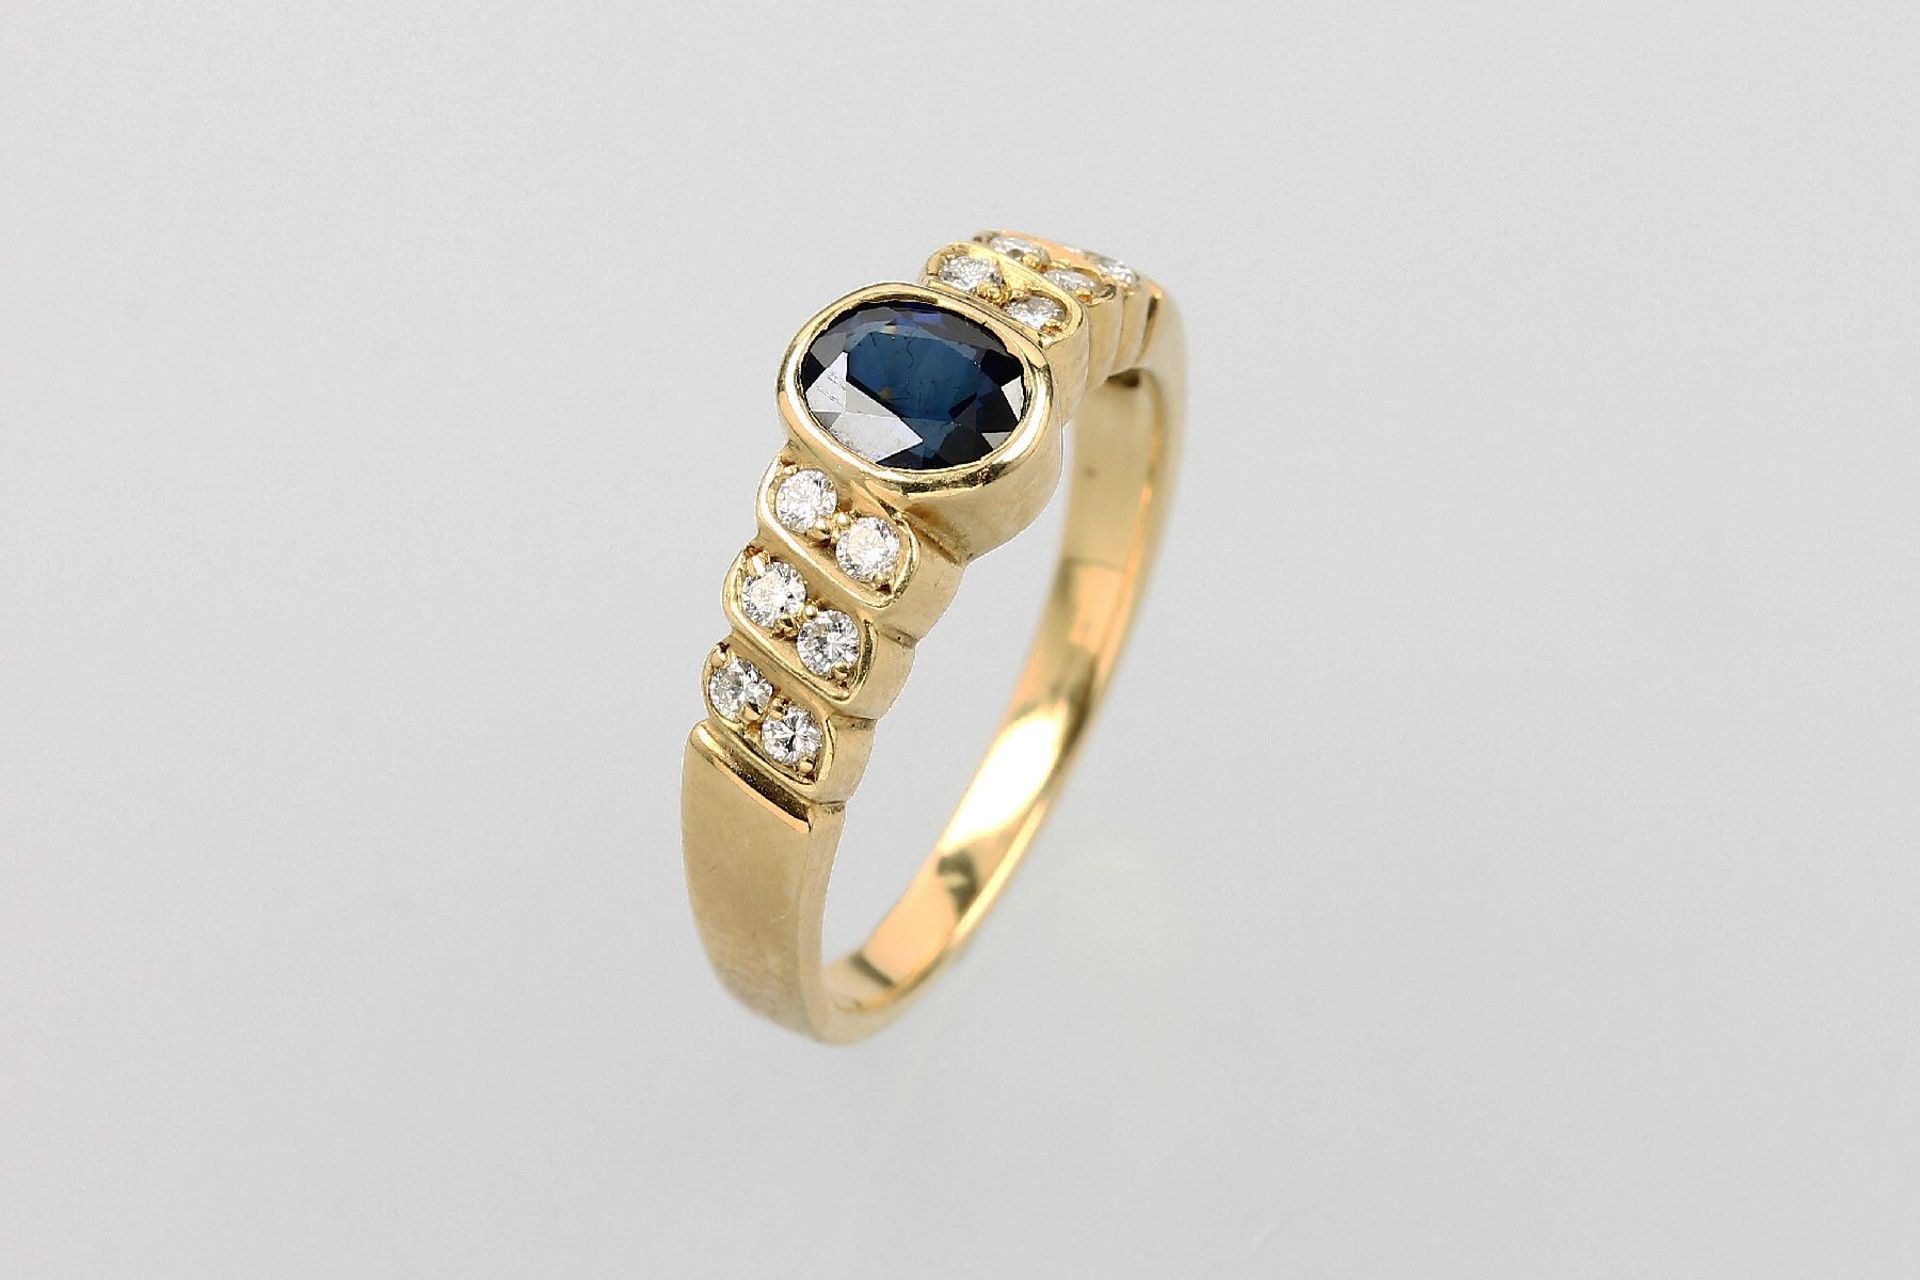 18 kt Gold Ring mit Saphir und Brillanten, GG 750/000, ovalfacett. Saphir ca. 0.40 ct, seitl.